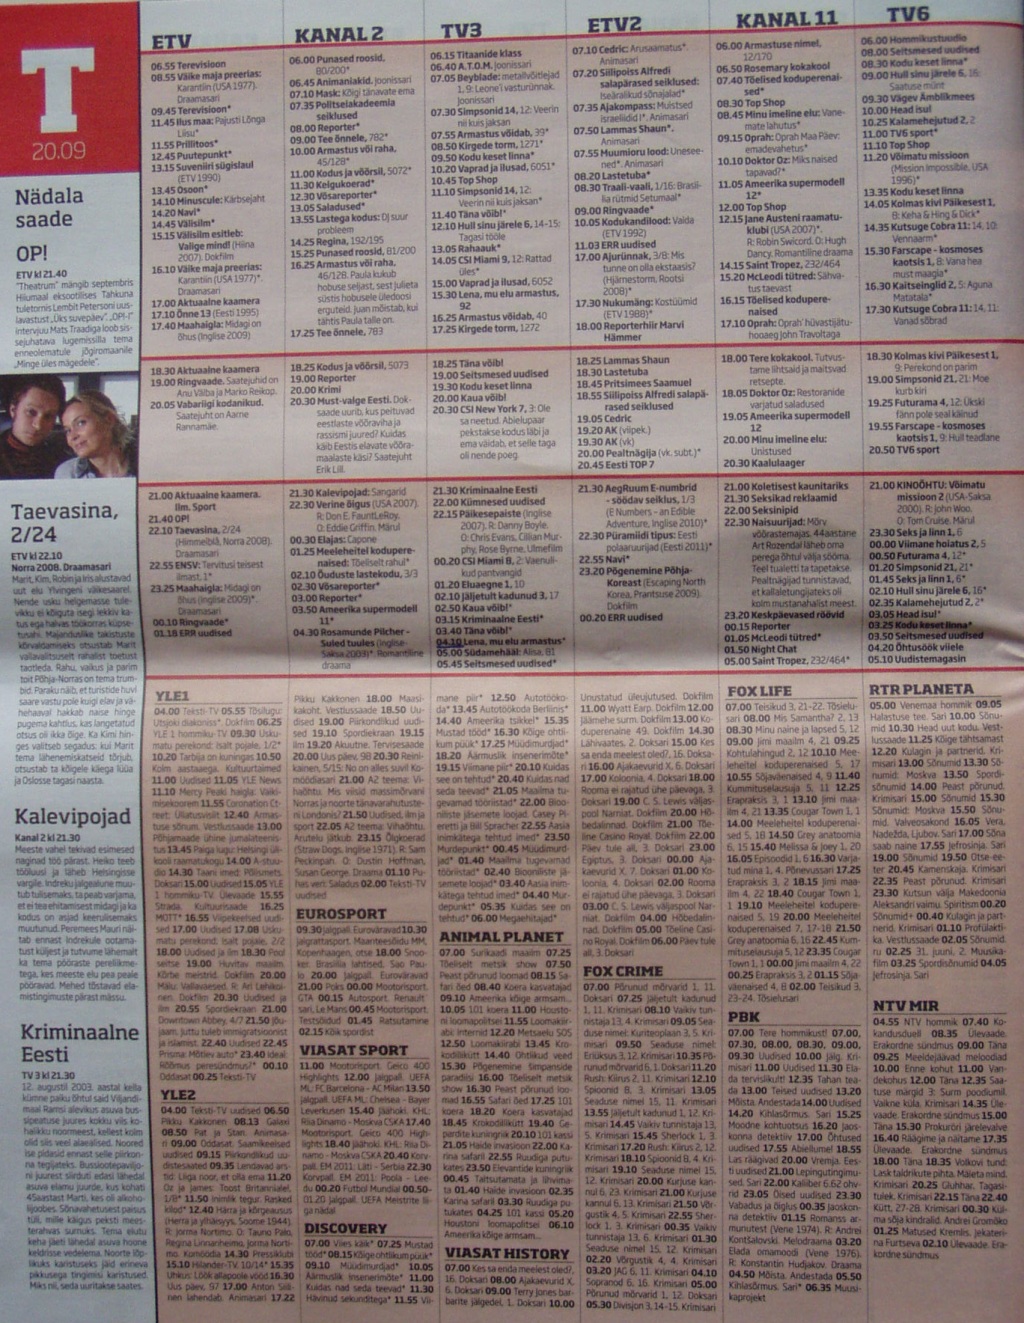 Ajalehe Reformimees vahel olevas saatekavas on ainult tasulistes pakettides olevad Kanal11 ja TV6 aga puudu on vabalevis olev TTV. 17. septembril ilmunud leht, 2011. aasta septembri saatekava kohta